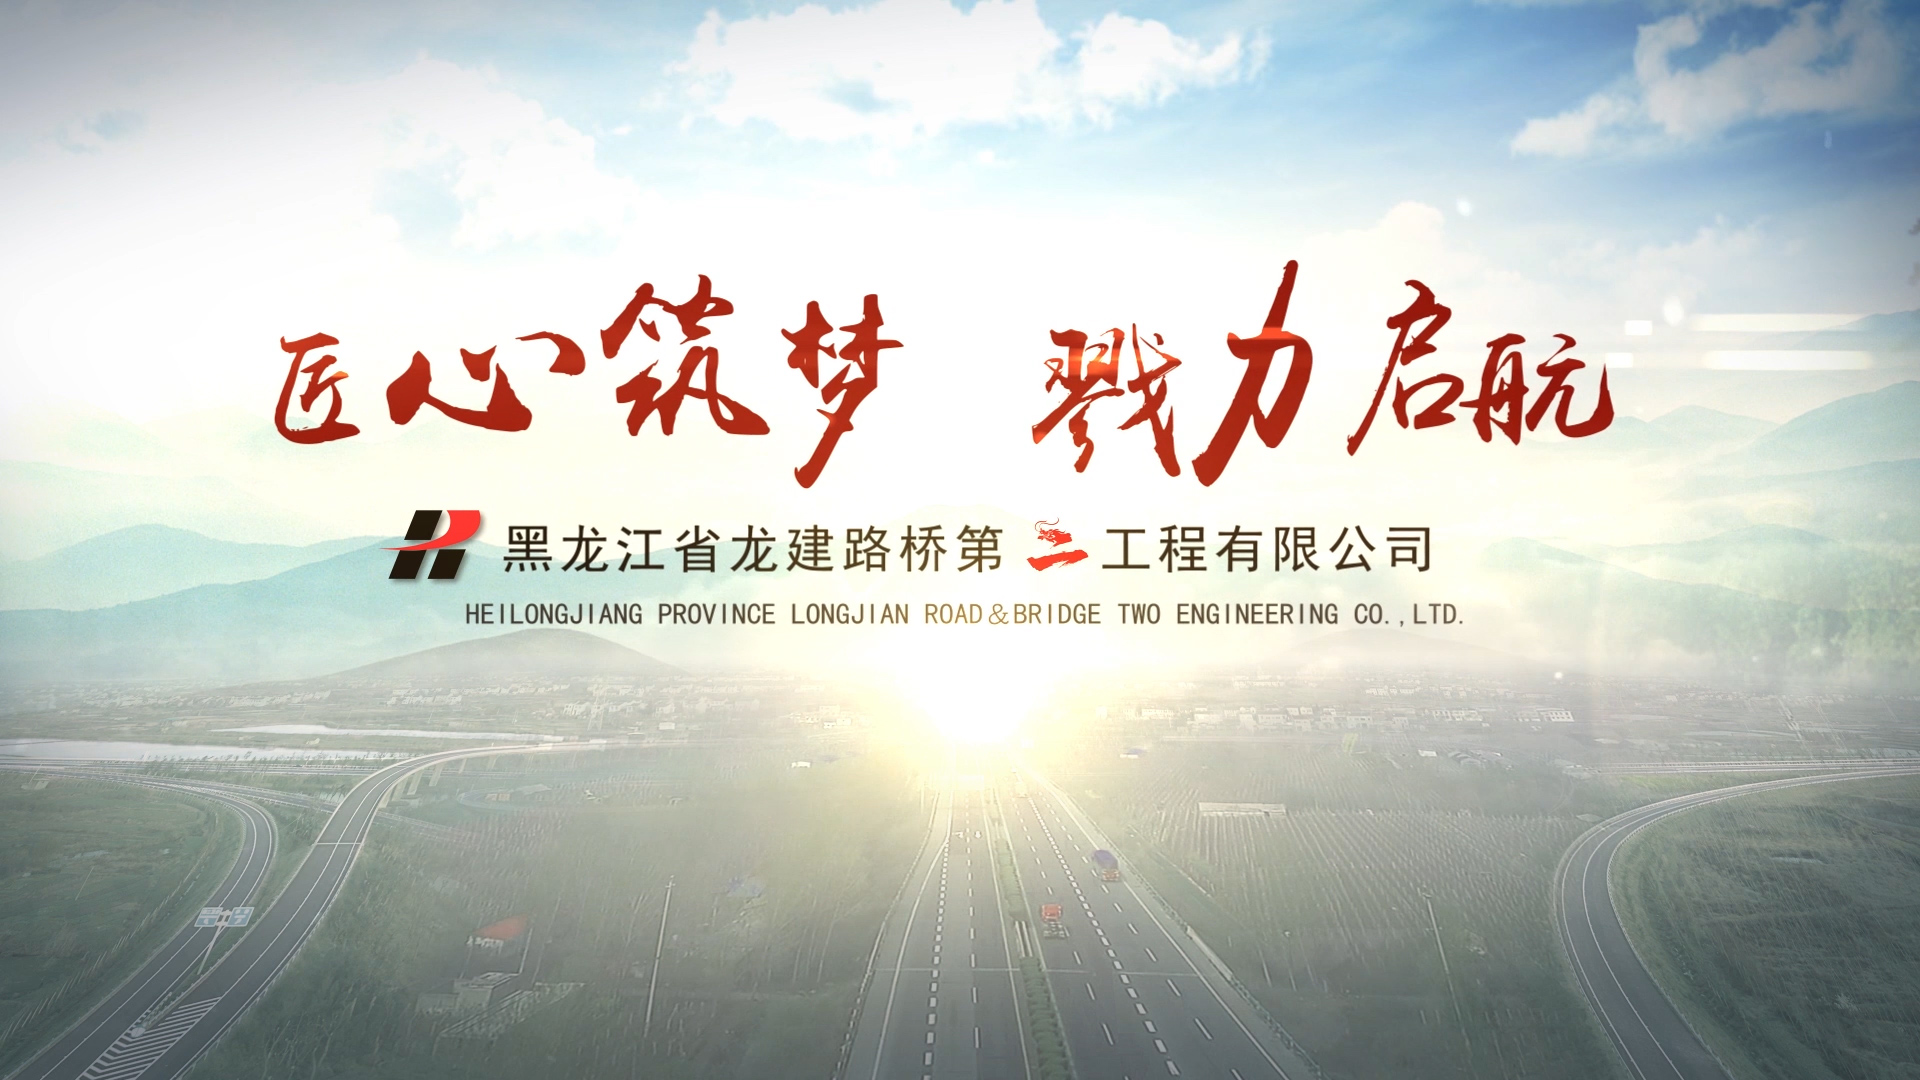 黑龙江省龙建路桥第二工程有限公司宣传片